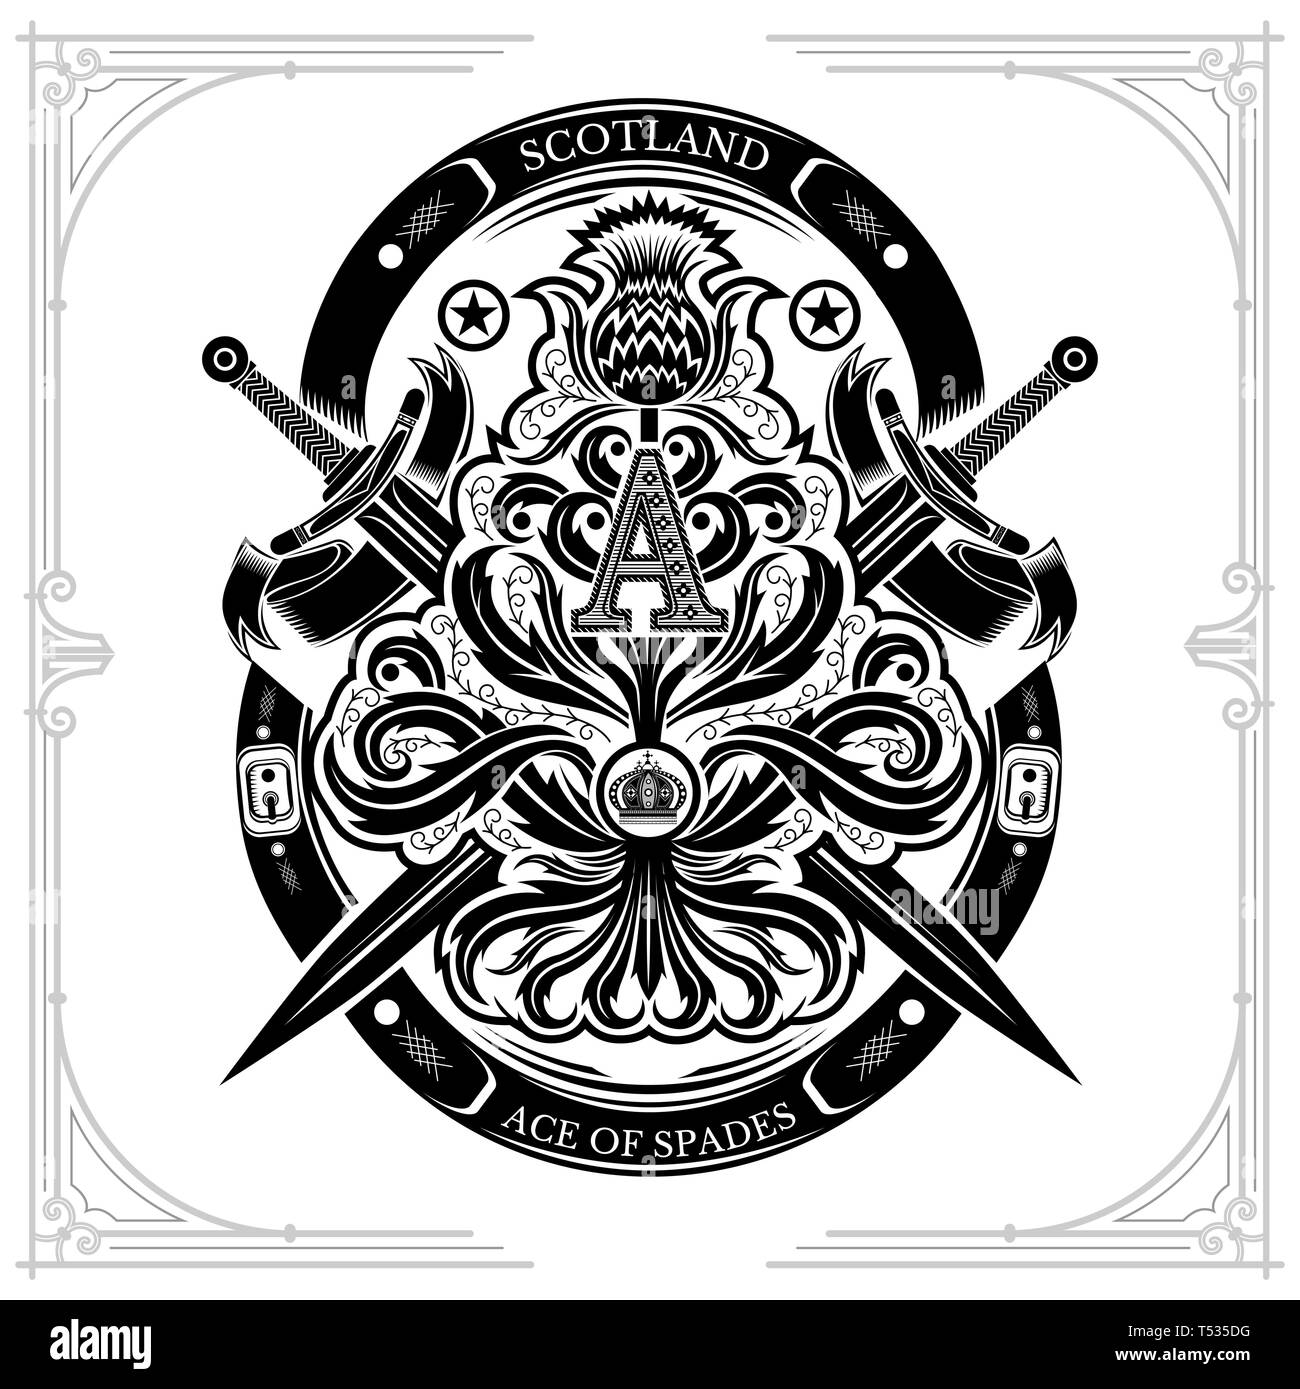 Ace of Spades von Thistle florales Muster mit Kreuz und Schwert Großbuchstabe A nside. Design Element, schwarz auf weiß Stock Vektor